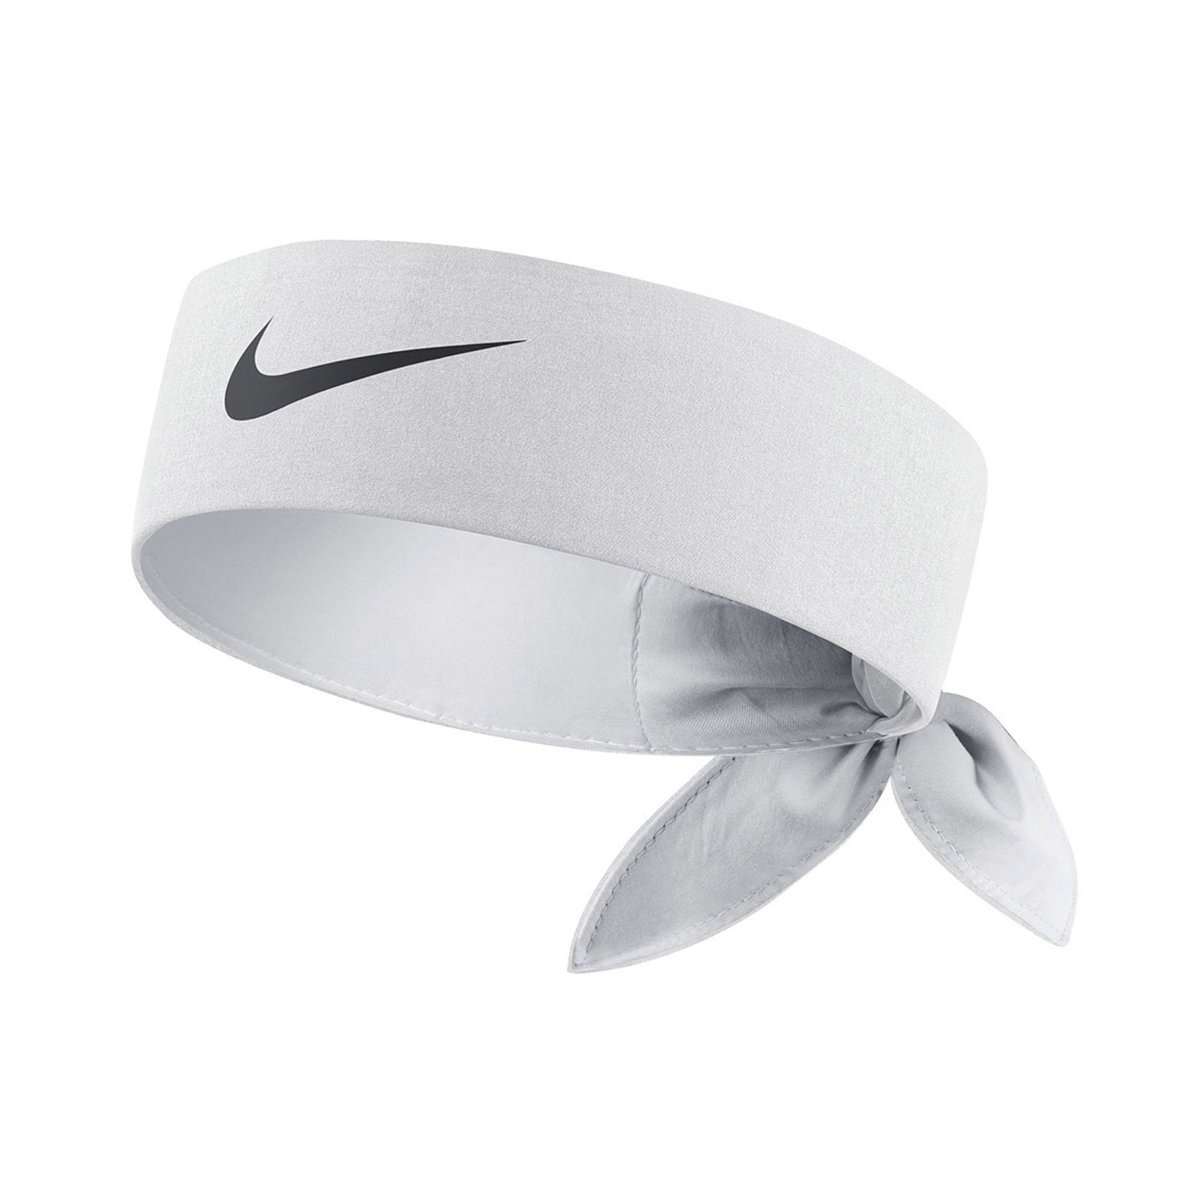 Zdjęcia - Pozostałe artykuły sportowe Nike , Opaska na głowę, Tennis Headband 101, biała 